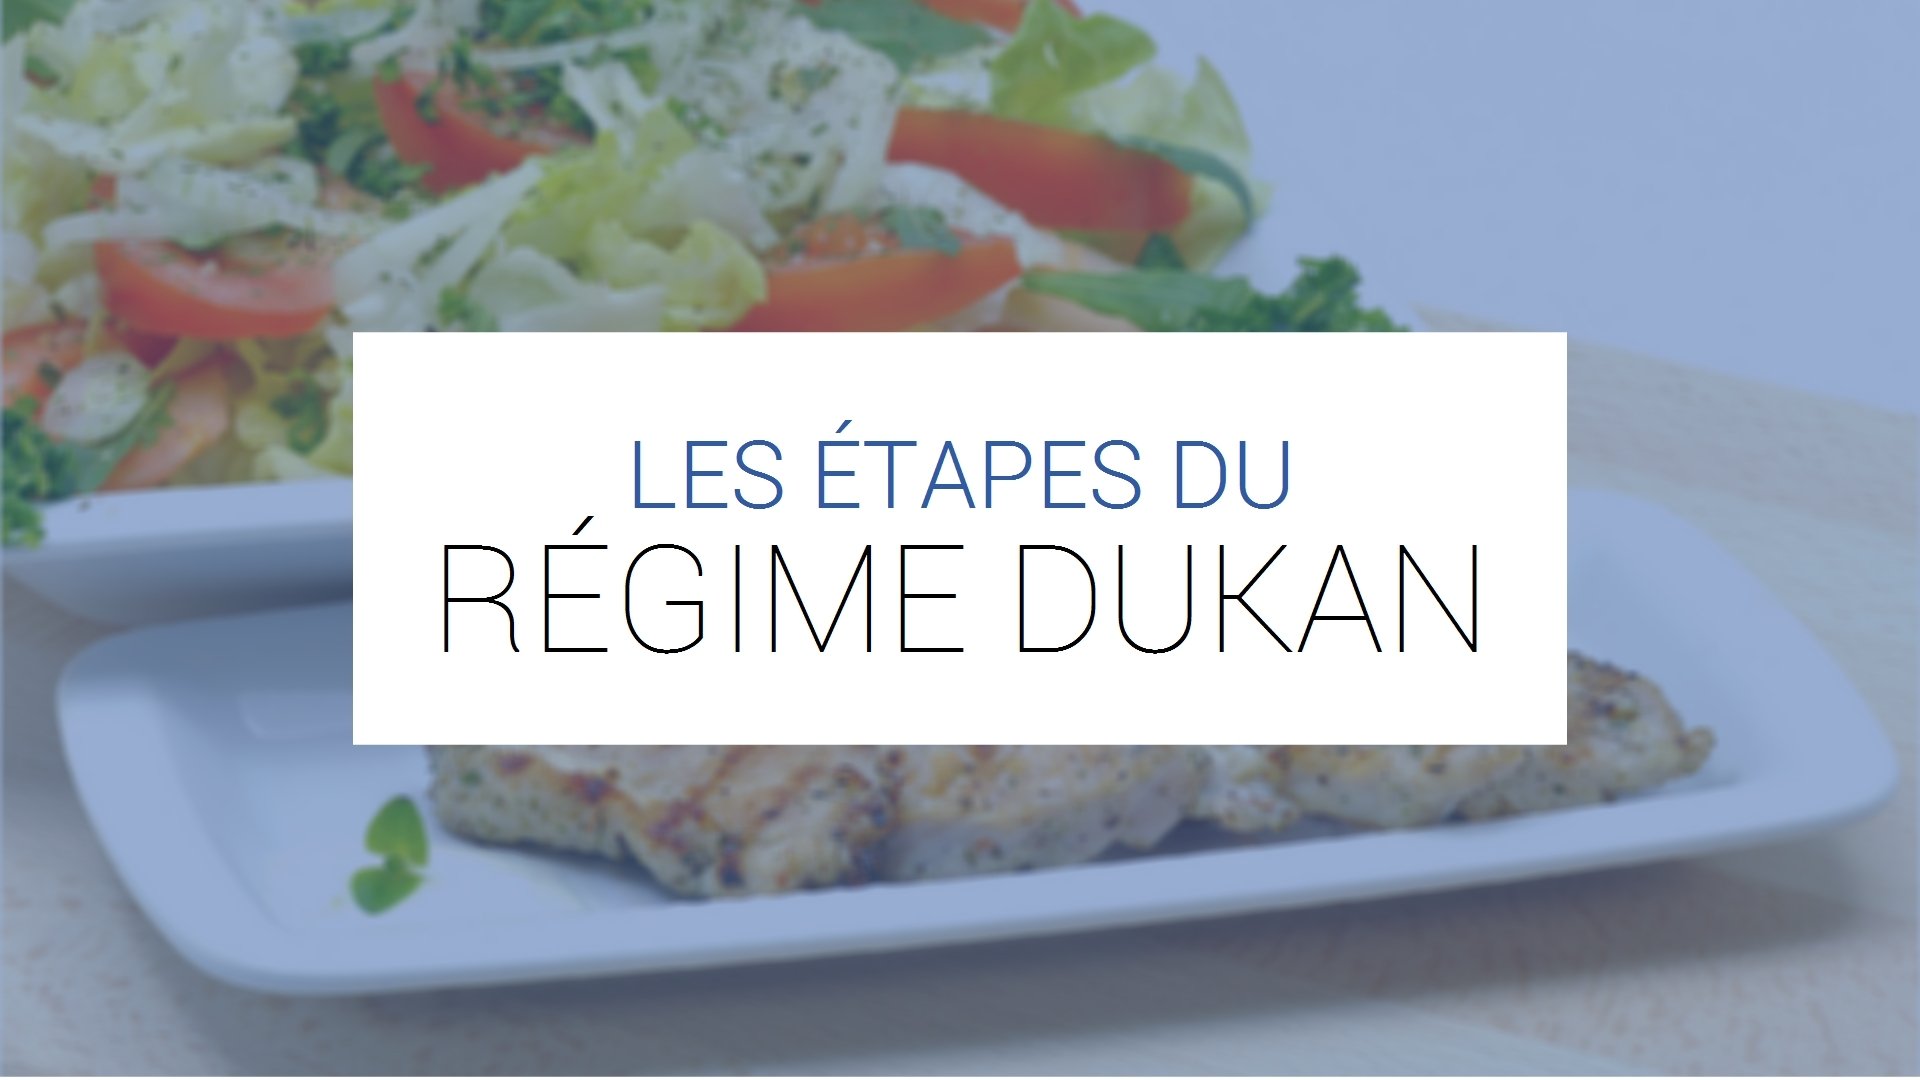 Recettes Dukan : toutes nos recettes pour cuisiner Dukan : toutes nos  recettes spéciales Recettes Dukan : toutes nos recettes pour cuisiner Dukan